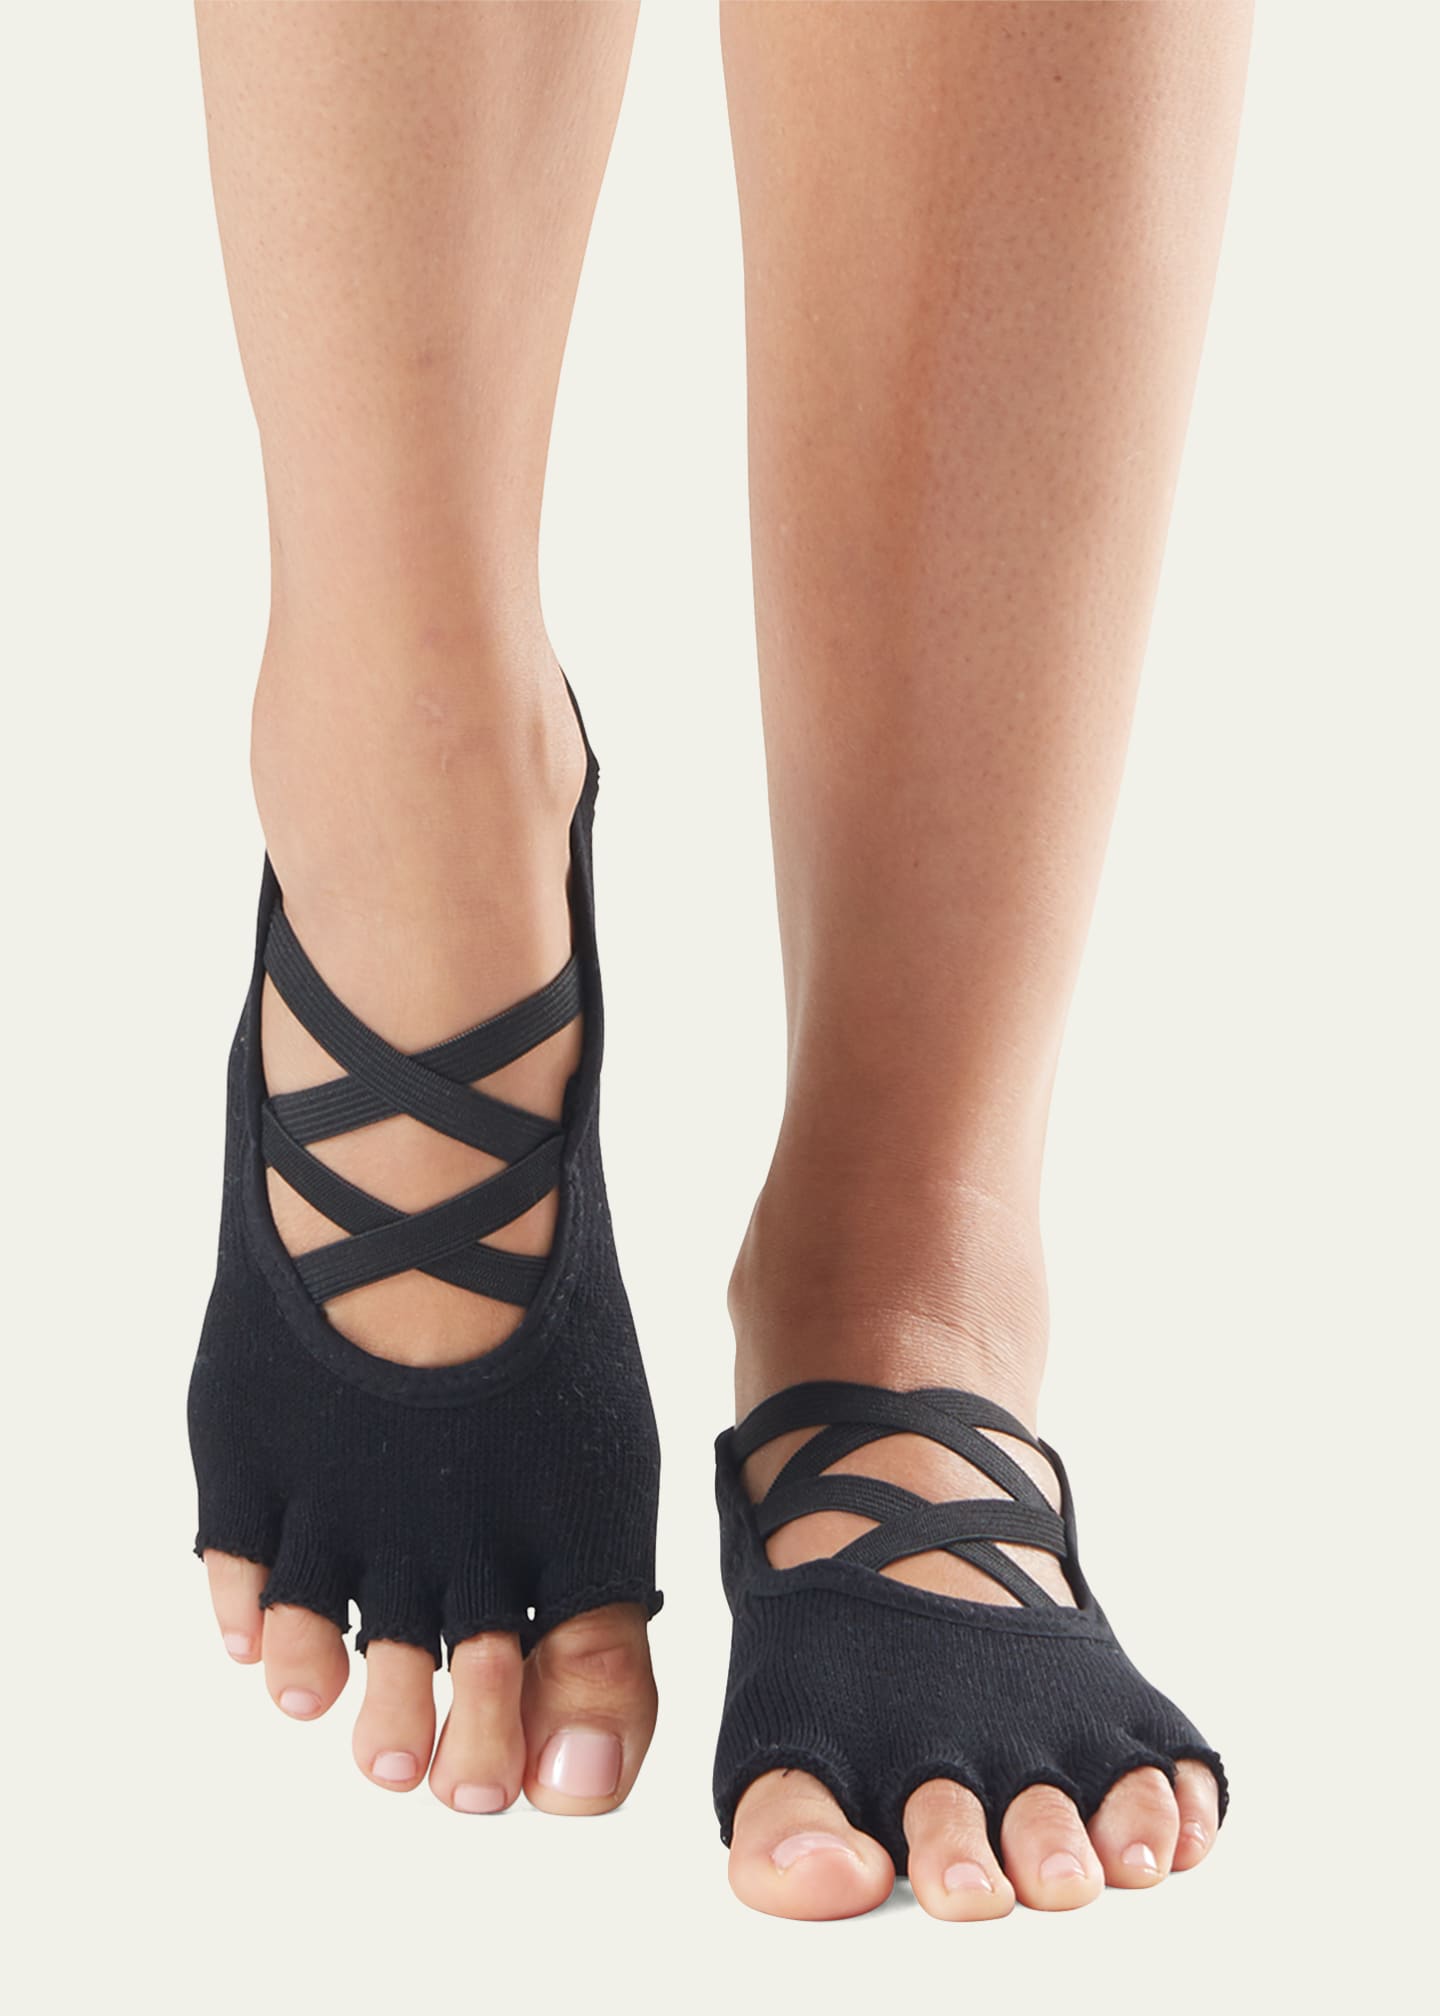 ToeSox Elle Full Toe Grip Socks 